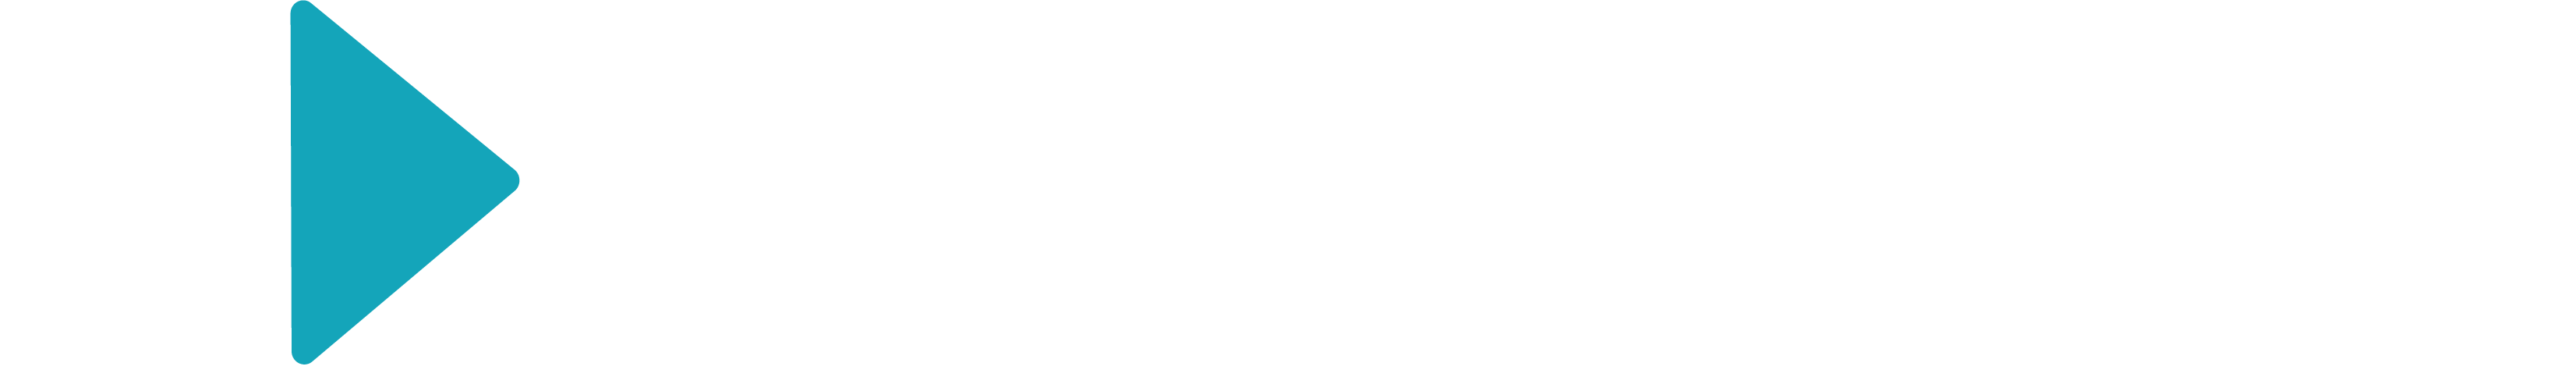 Julien Dubuque Film Festival 2020